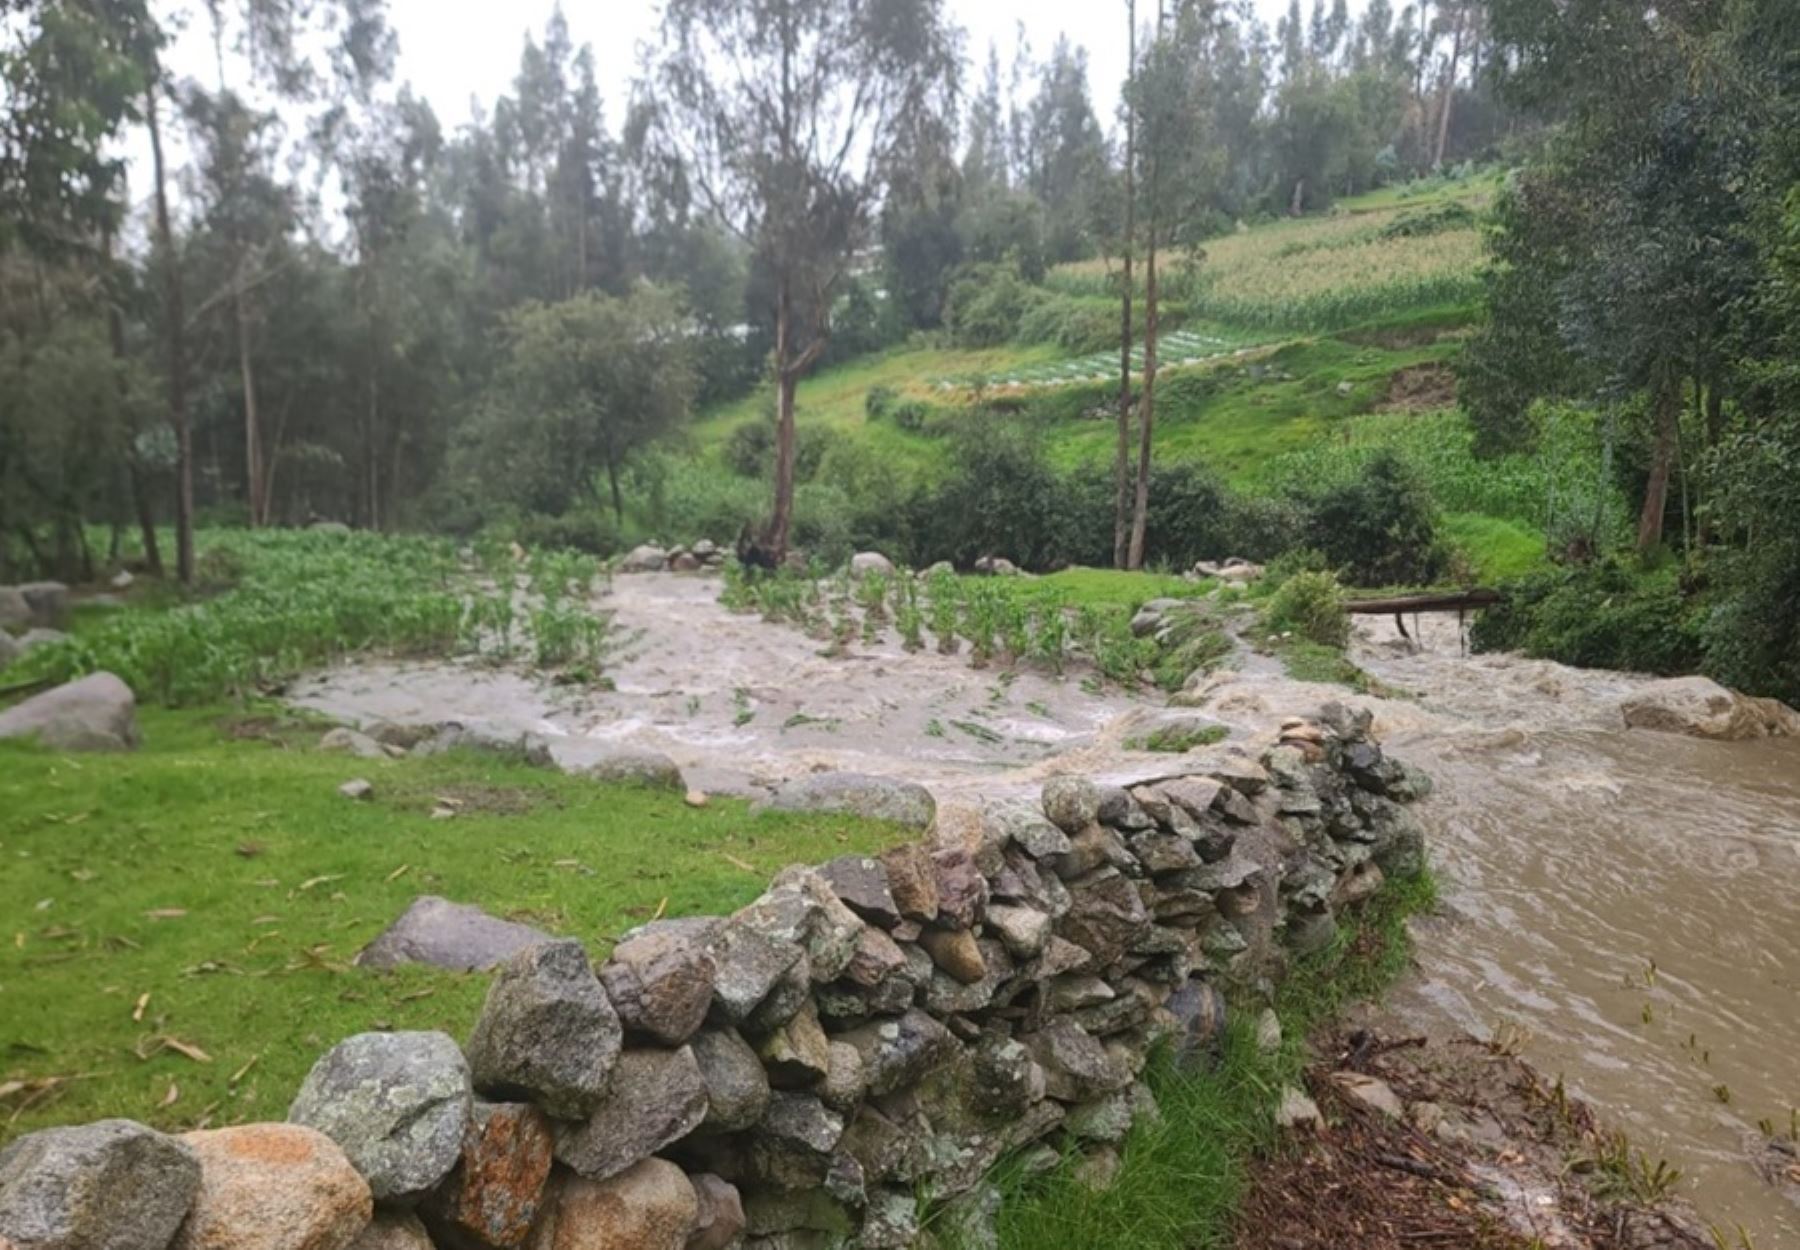 El desborde de los ríos Marcará y Toma Rumi, debido a intensas lluvias, provocó daños a una vivienda, cultivos agrícolas y a un puente peatonal en el distrito de Marcará, provincia de Carhuaz, región Áncash.